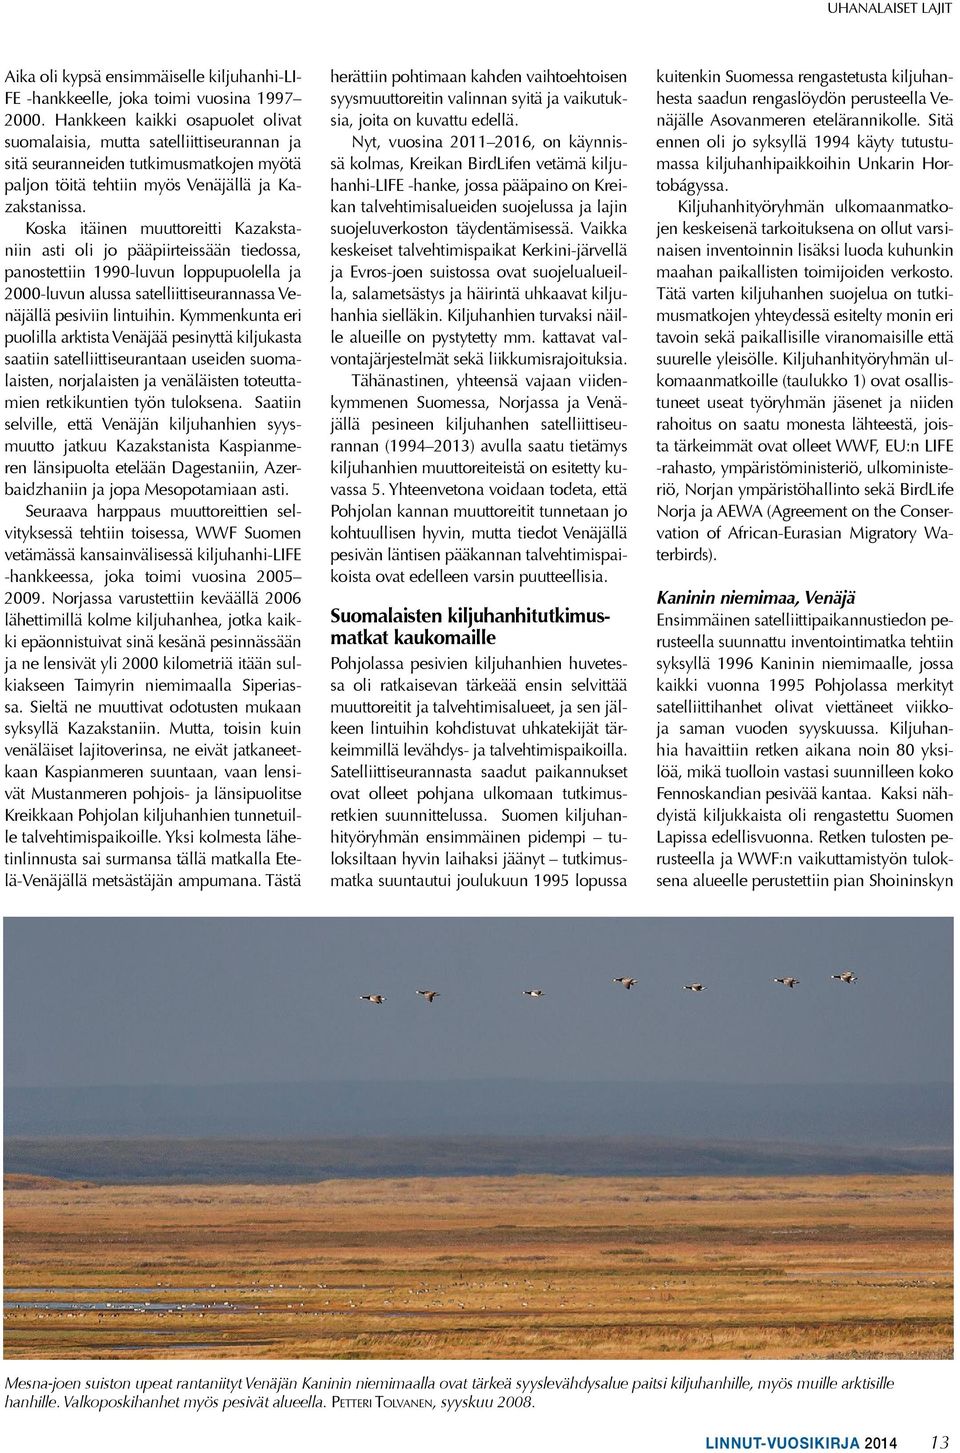 Koska itäinen muuttoreitti Kazakstaniin asti oli jo pääpiirteissään tiedossa, panostettiin 1990-luvun loppupuolella ja 2000-luvun alussa satelliittiseurannassa Venäjällä pesiviin lintuihin.